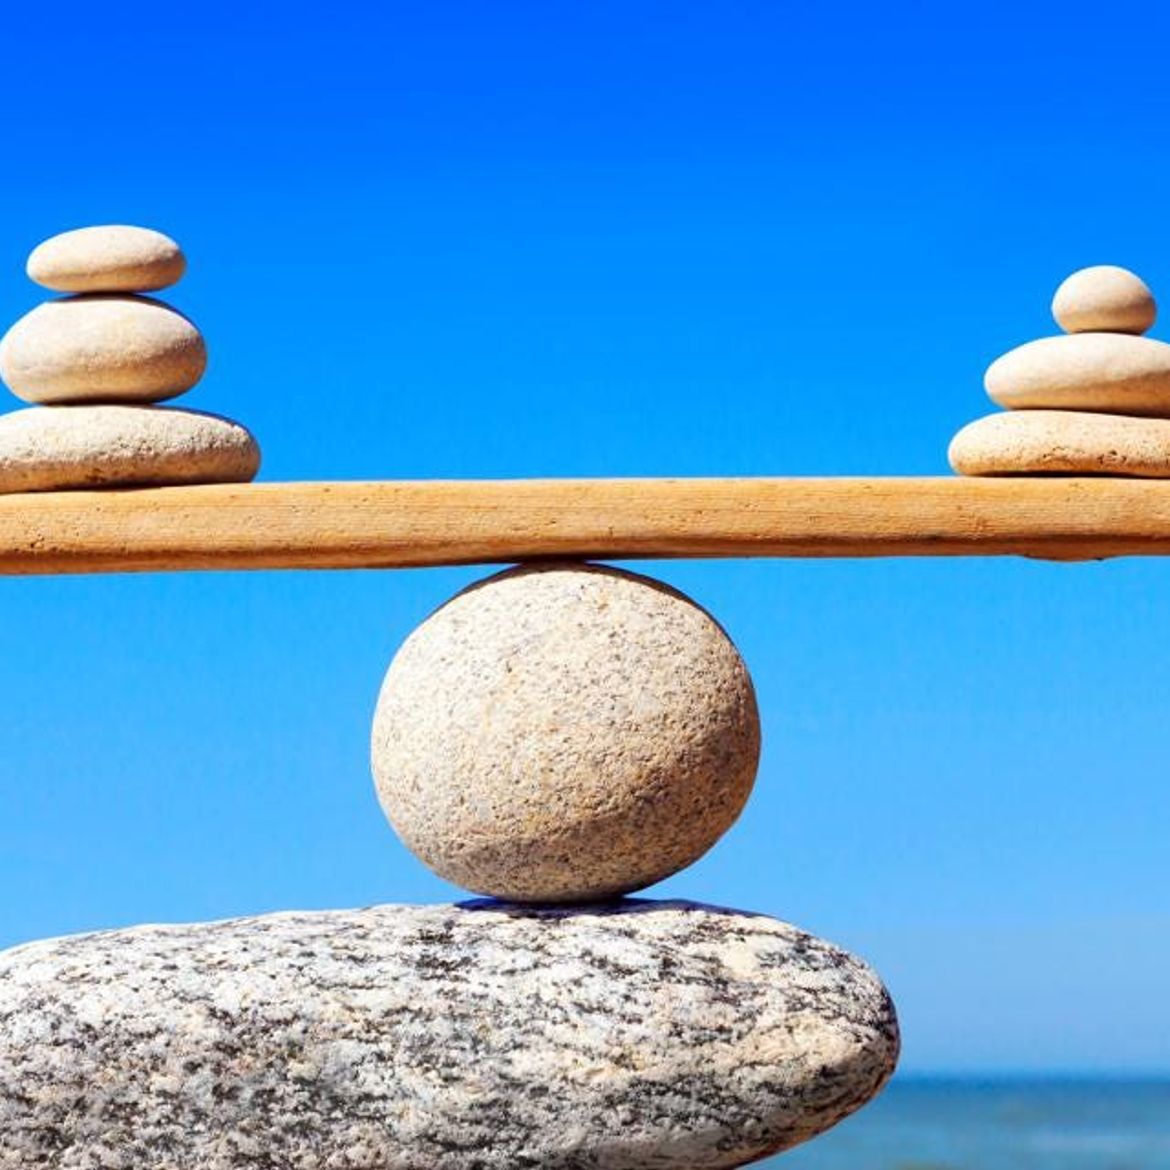 Нулевое равновесие. Равновесие. "Баланс". Гармония и равновесие. Стабильность и равновесие.